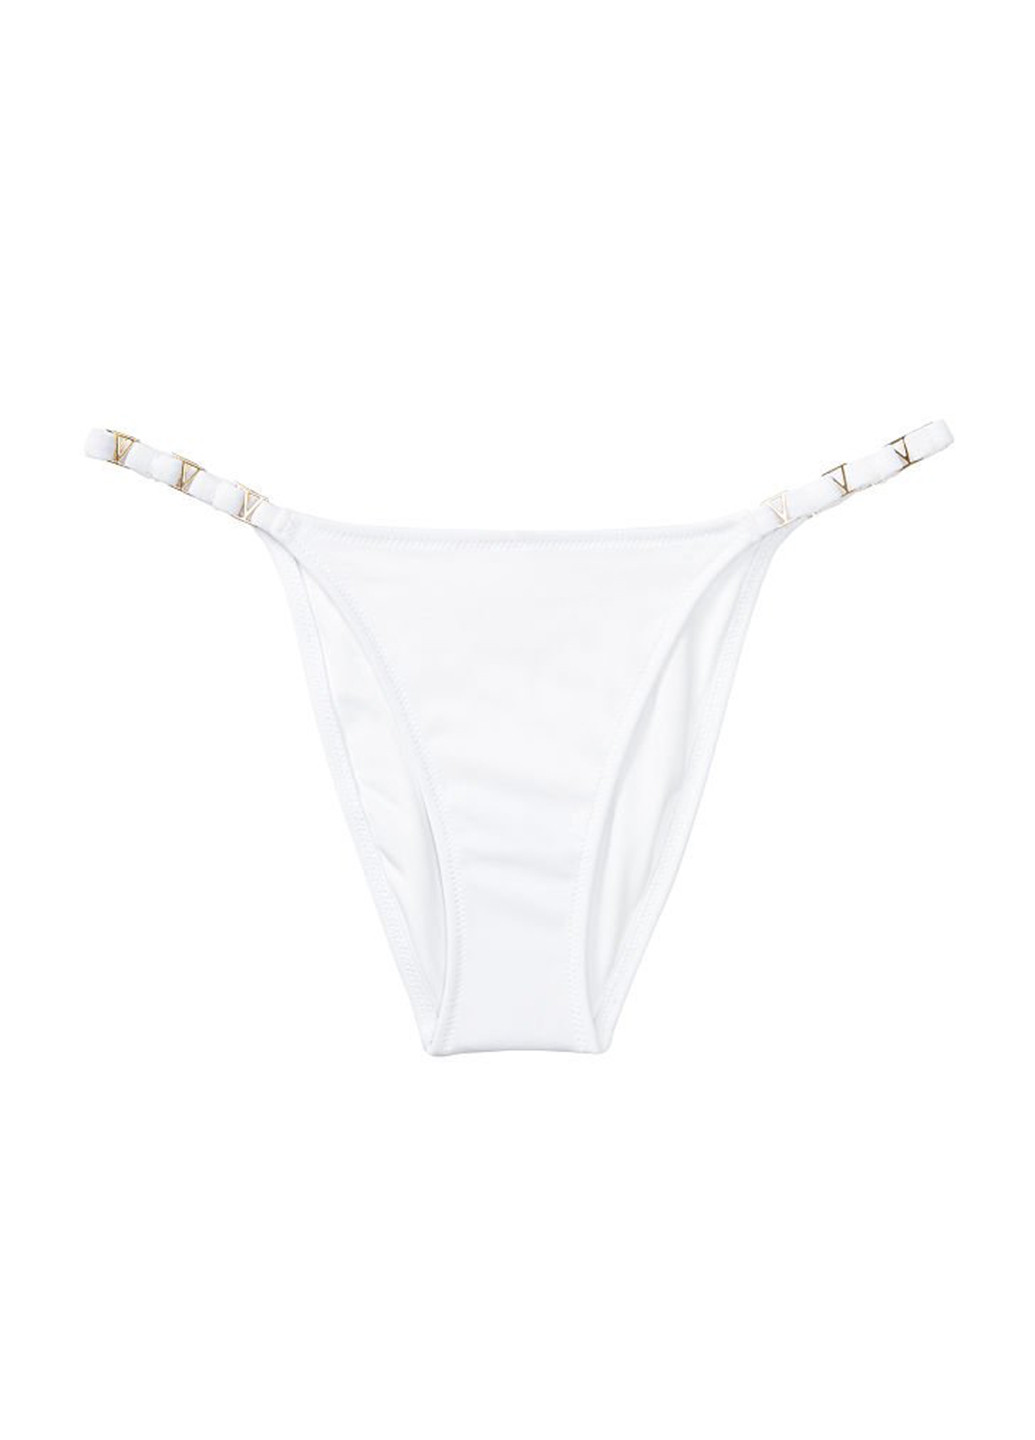 Білий літній купальник (ліф, трусики) роздільний Victoria's Secret